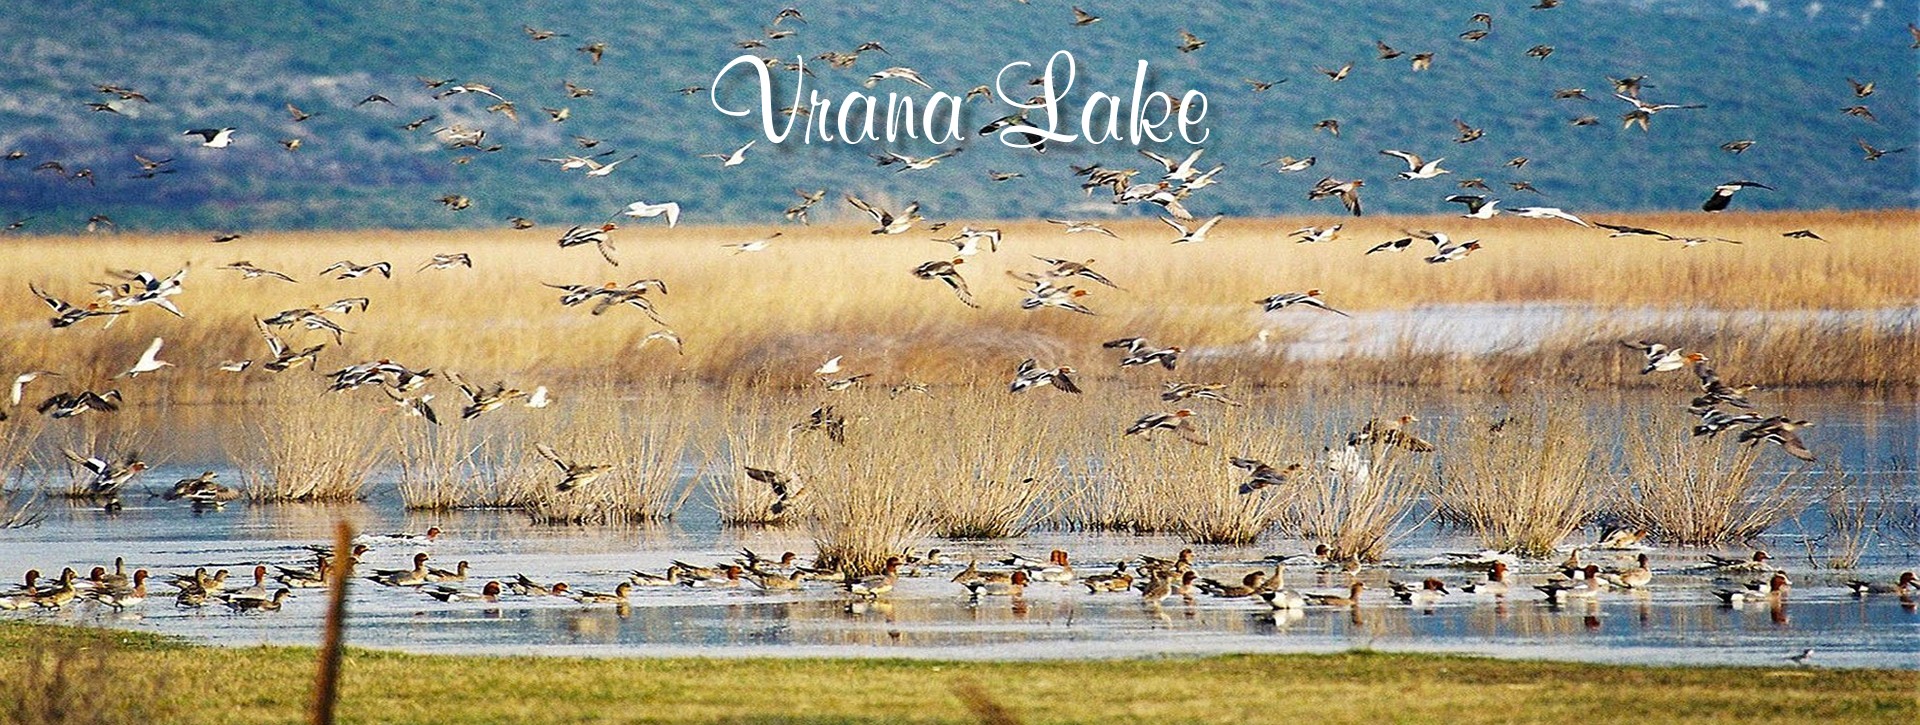 Vrana Lake